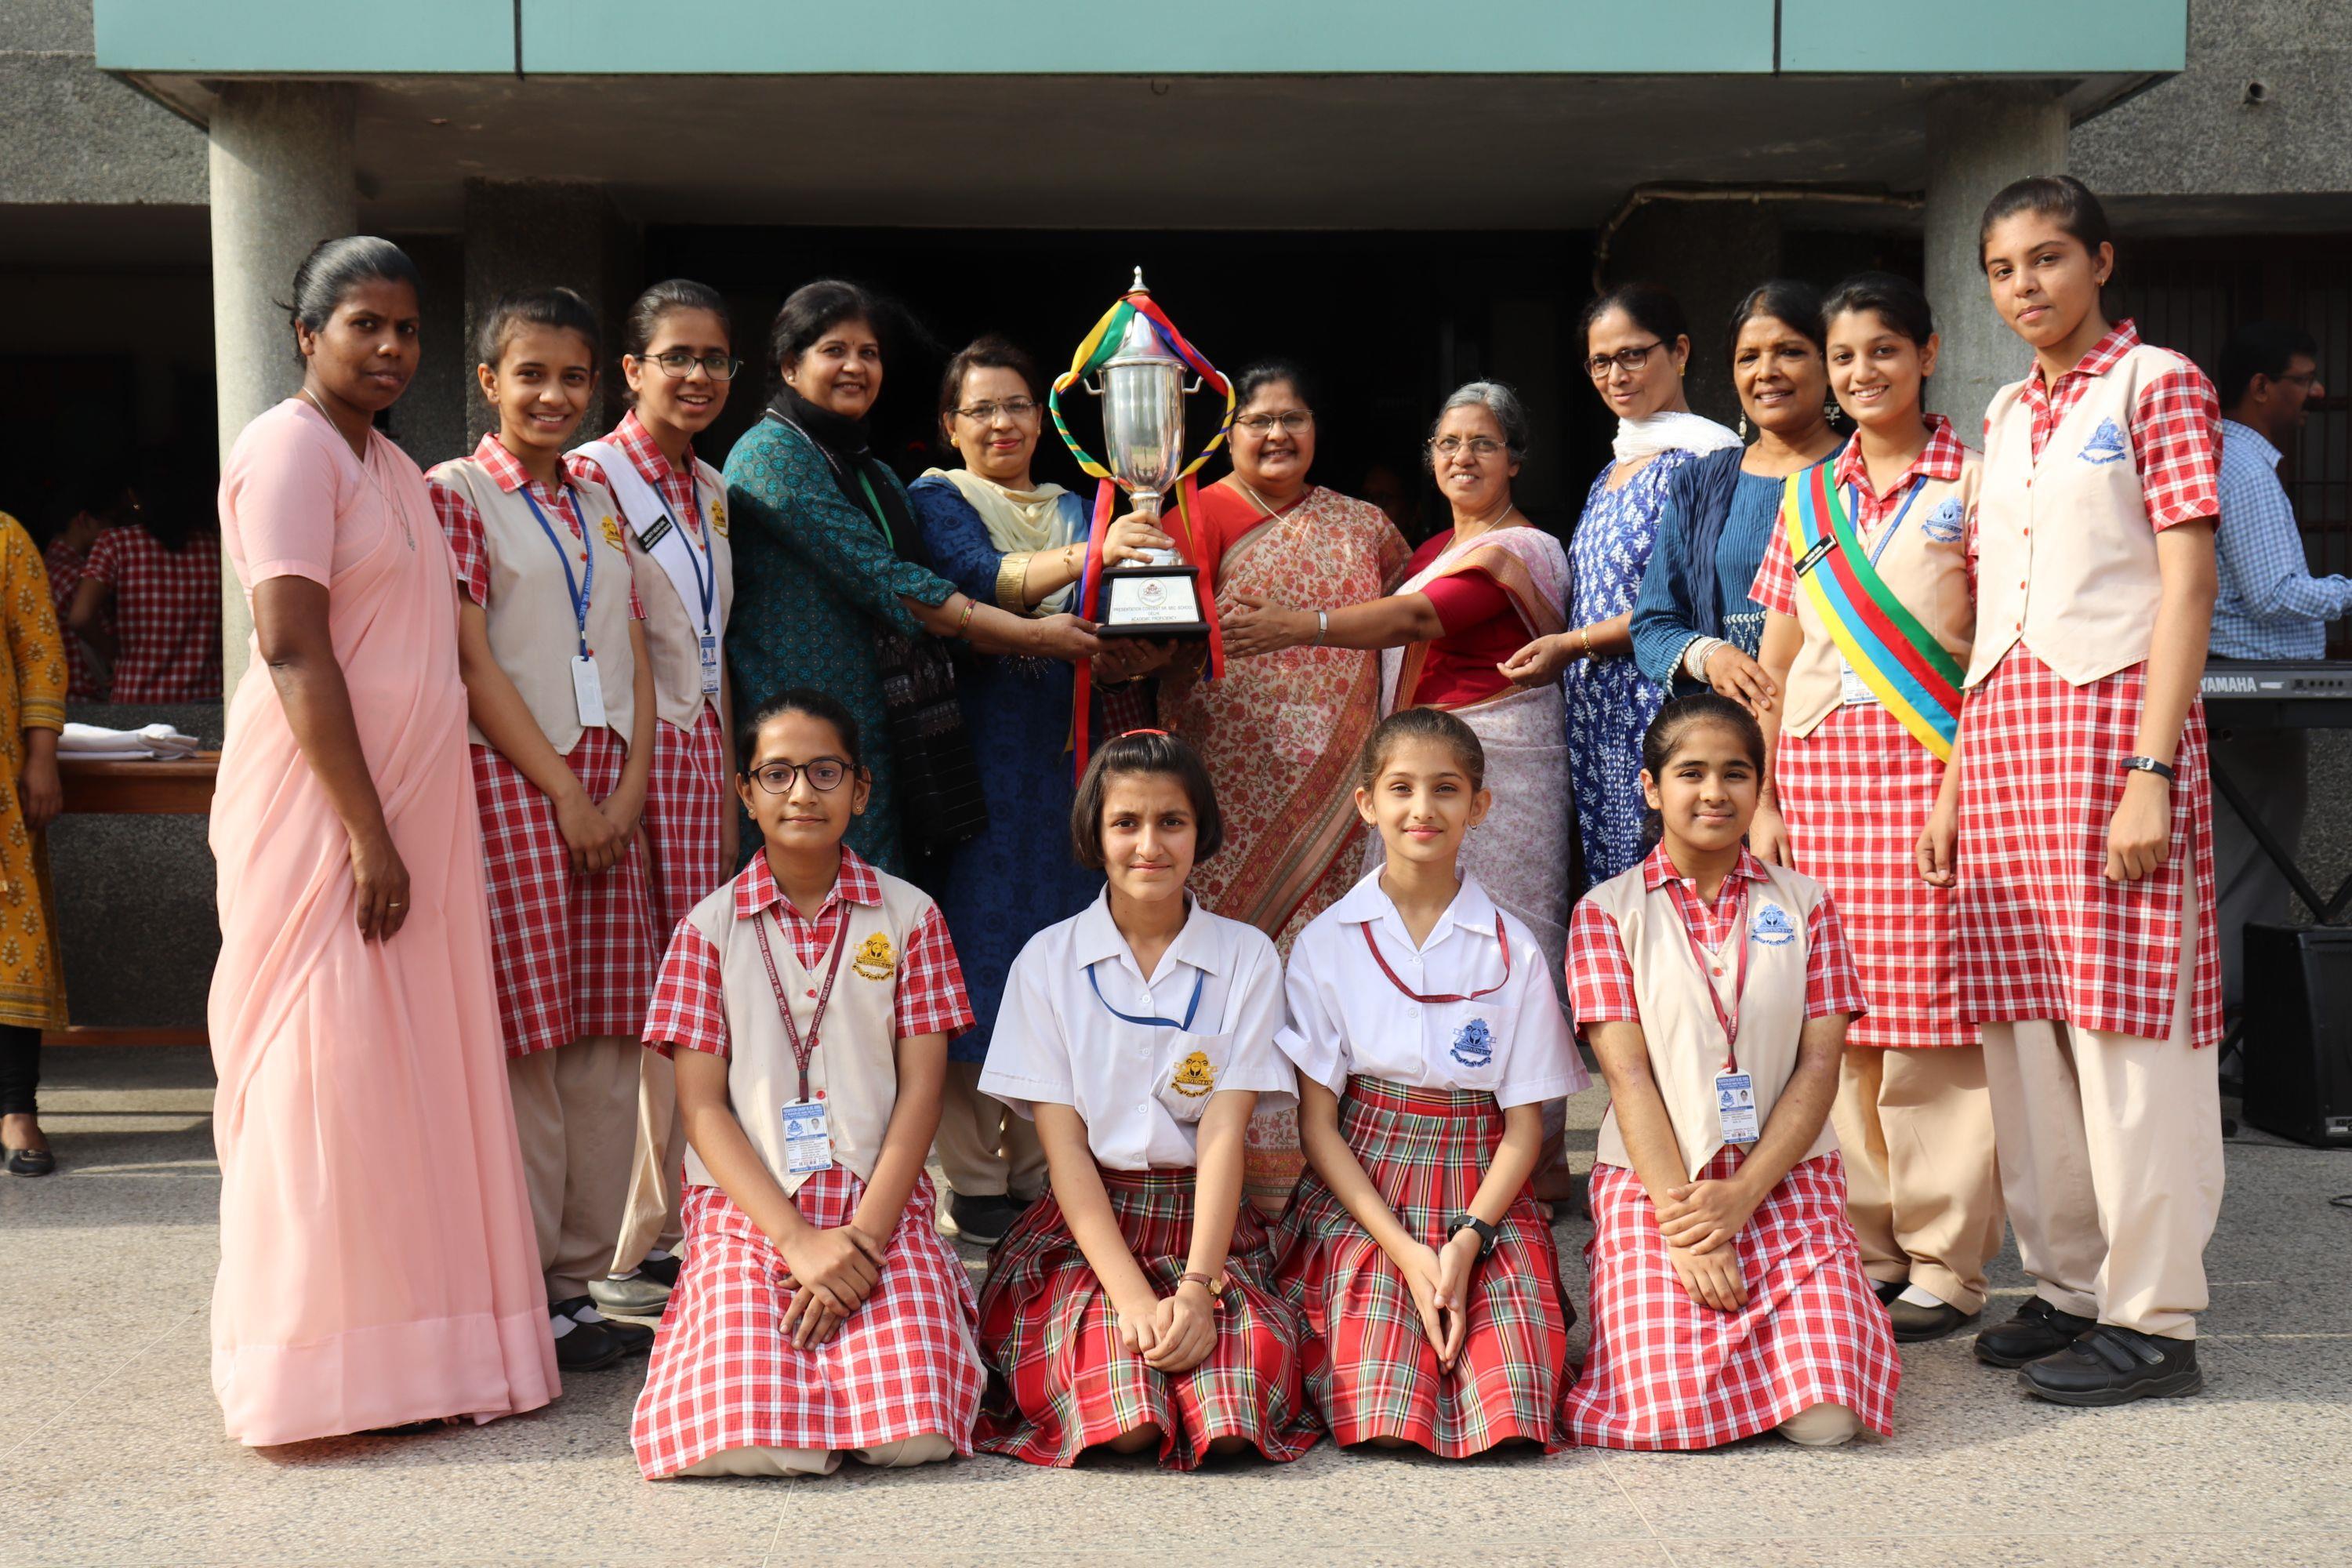 presentation convent school delhi ranking